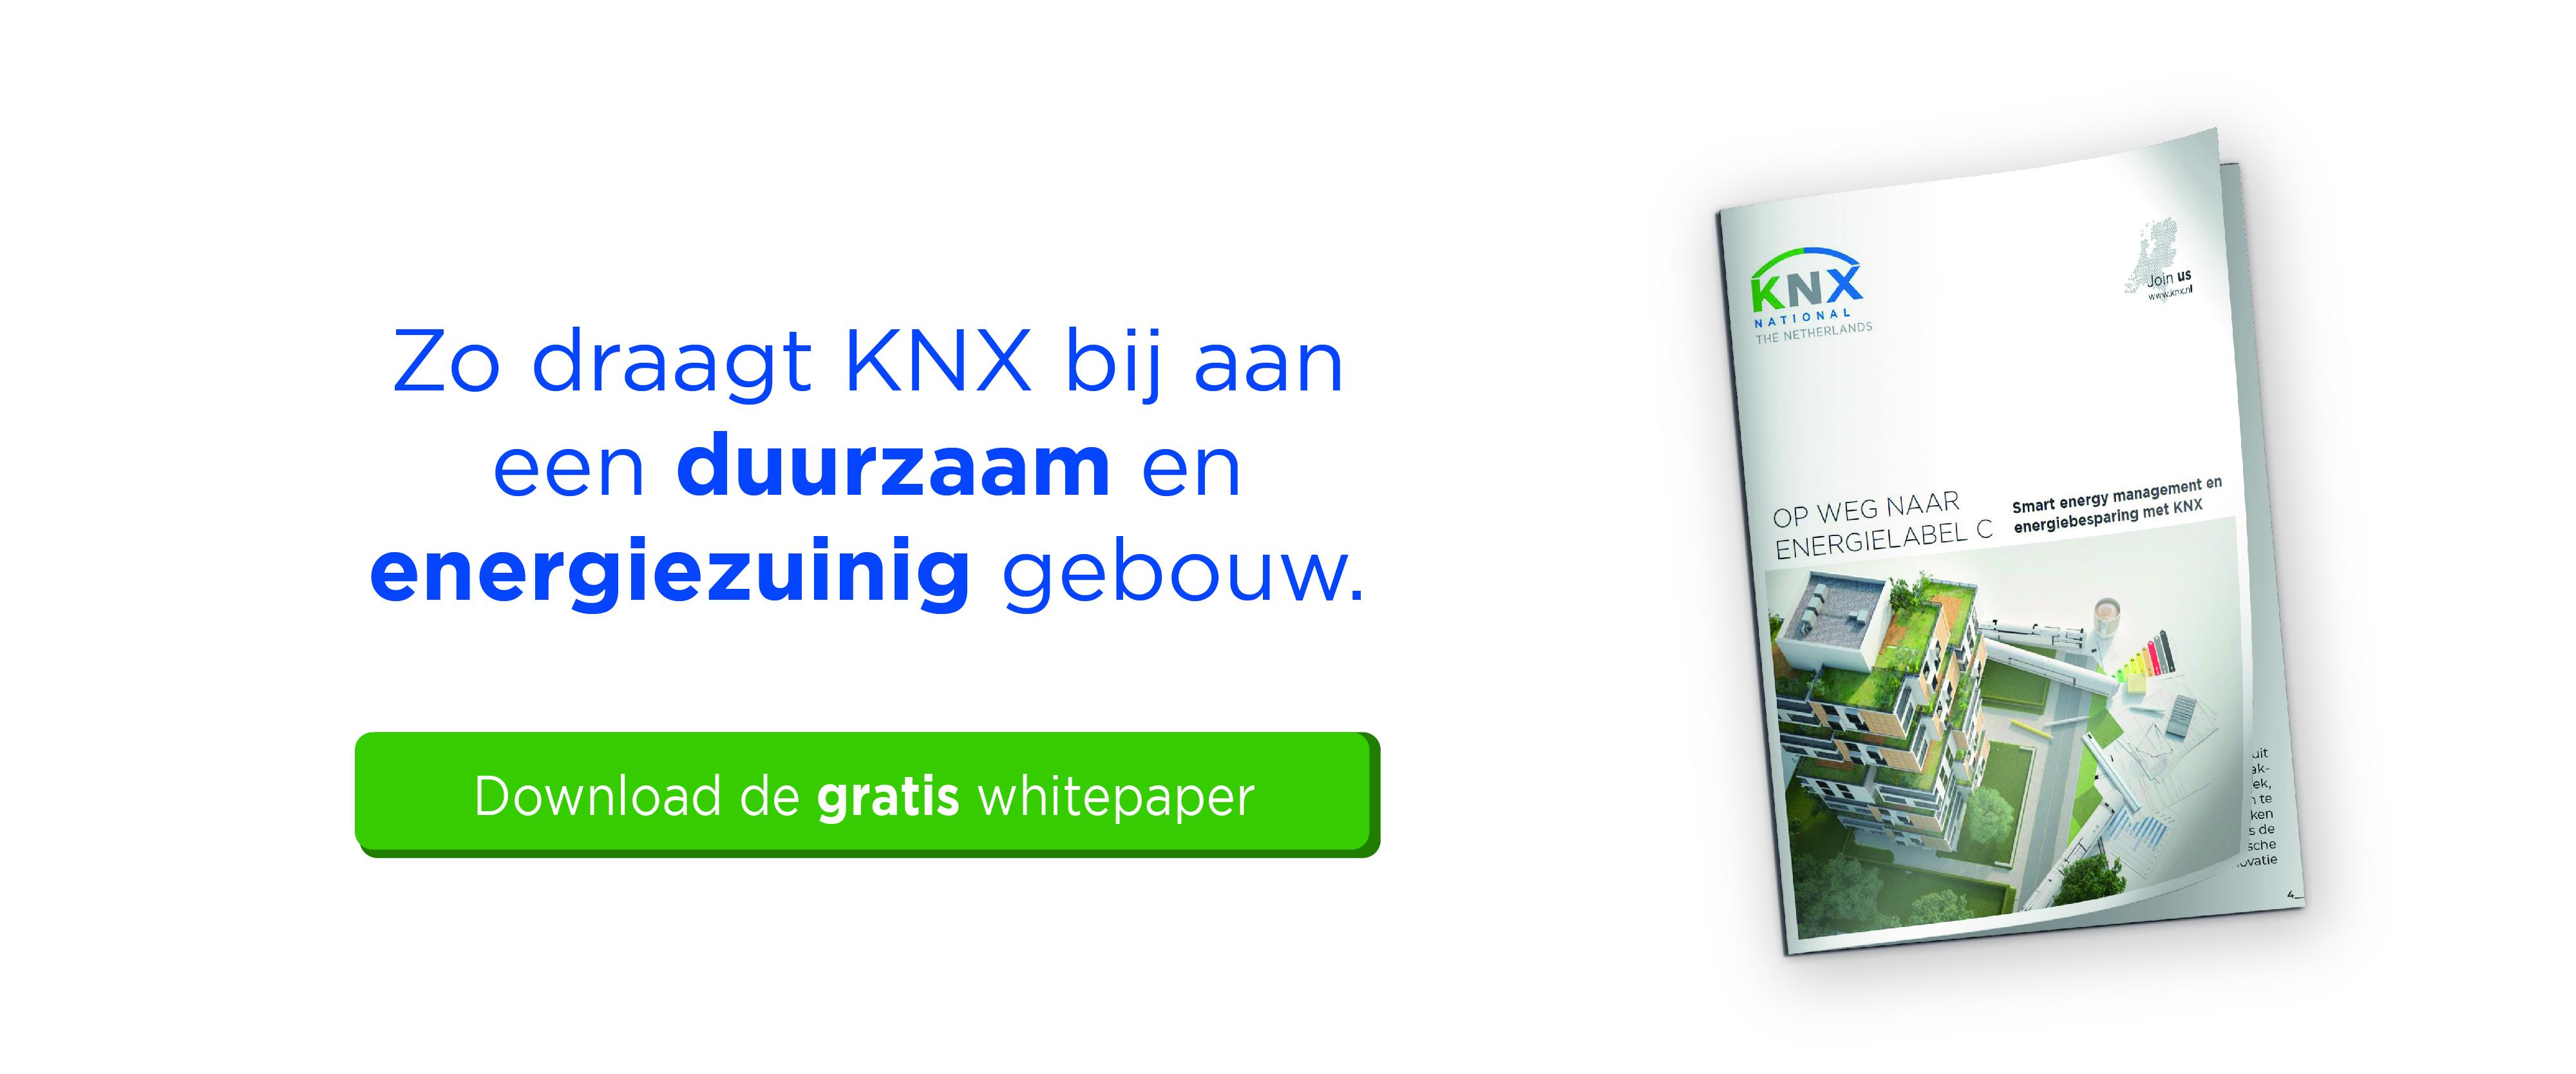 KNX Nederland biedt handvatten voor gebouwverduurzaming met nieuw whitepaper